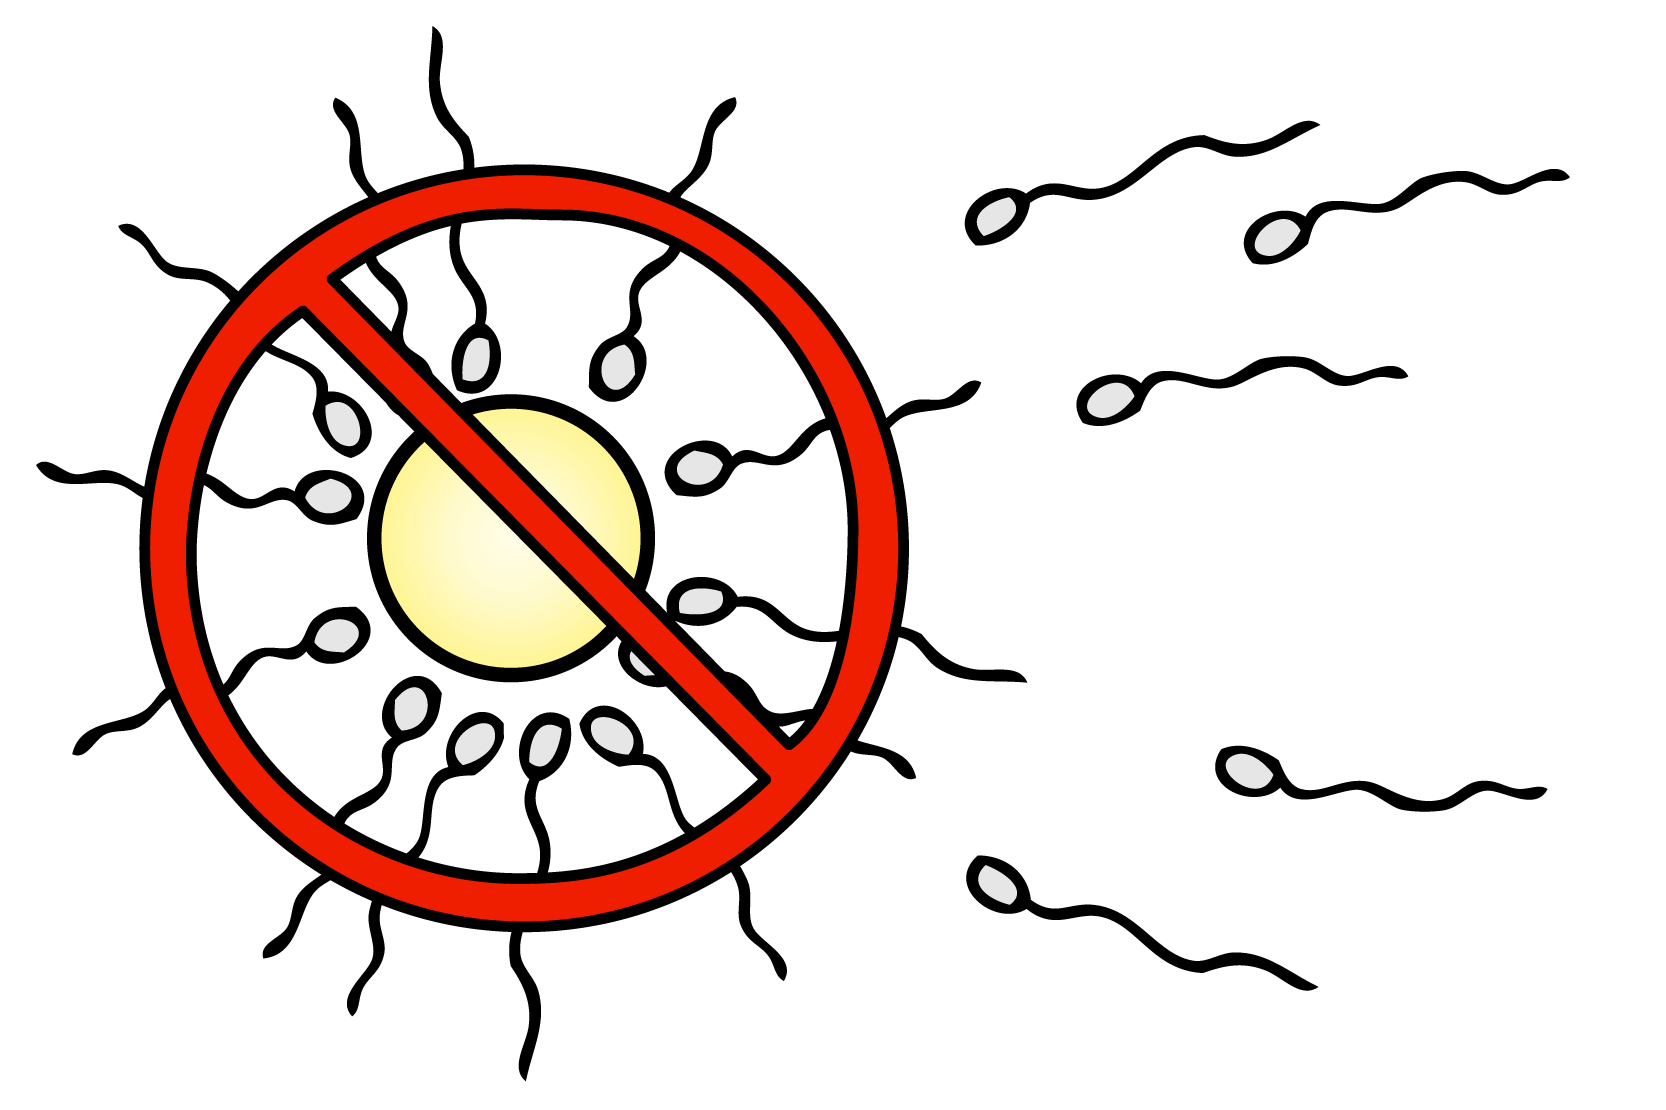 Spermier som simmar mot ett ägg men ägget är överkryssat med en röd cirkel med sträck igenom.